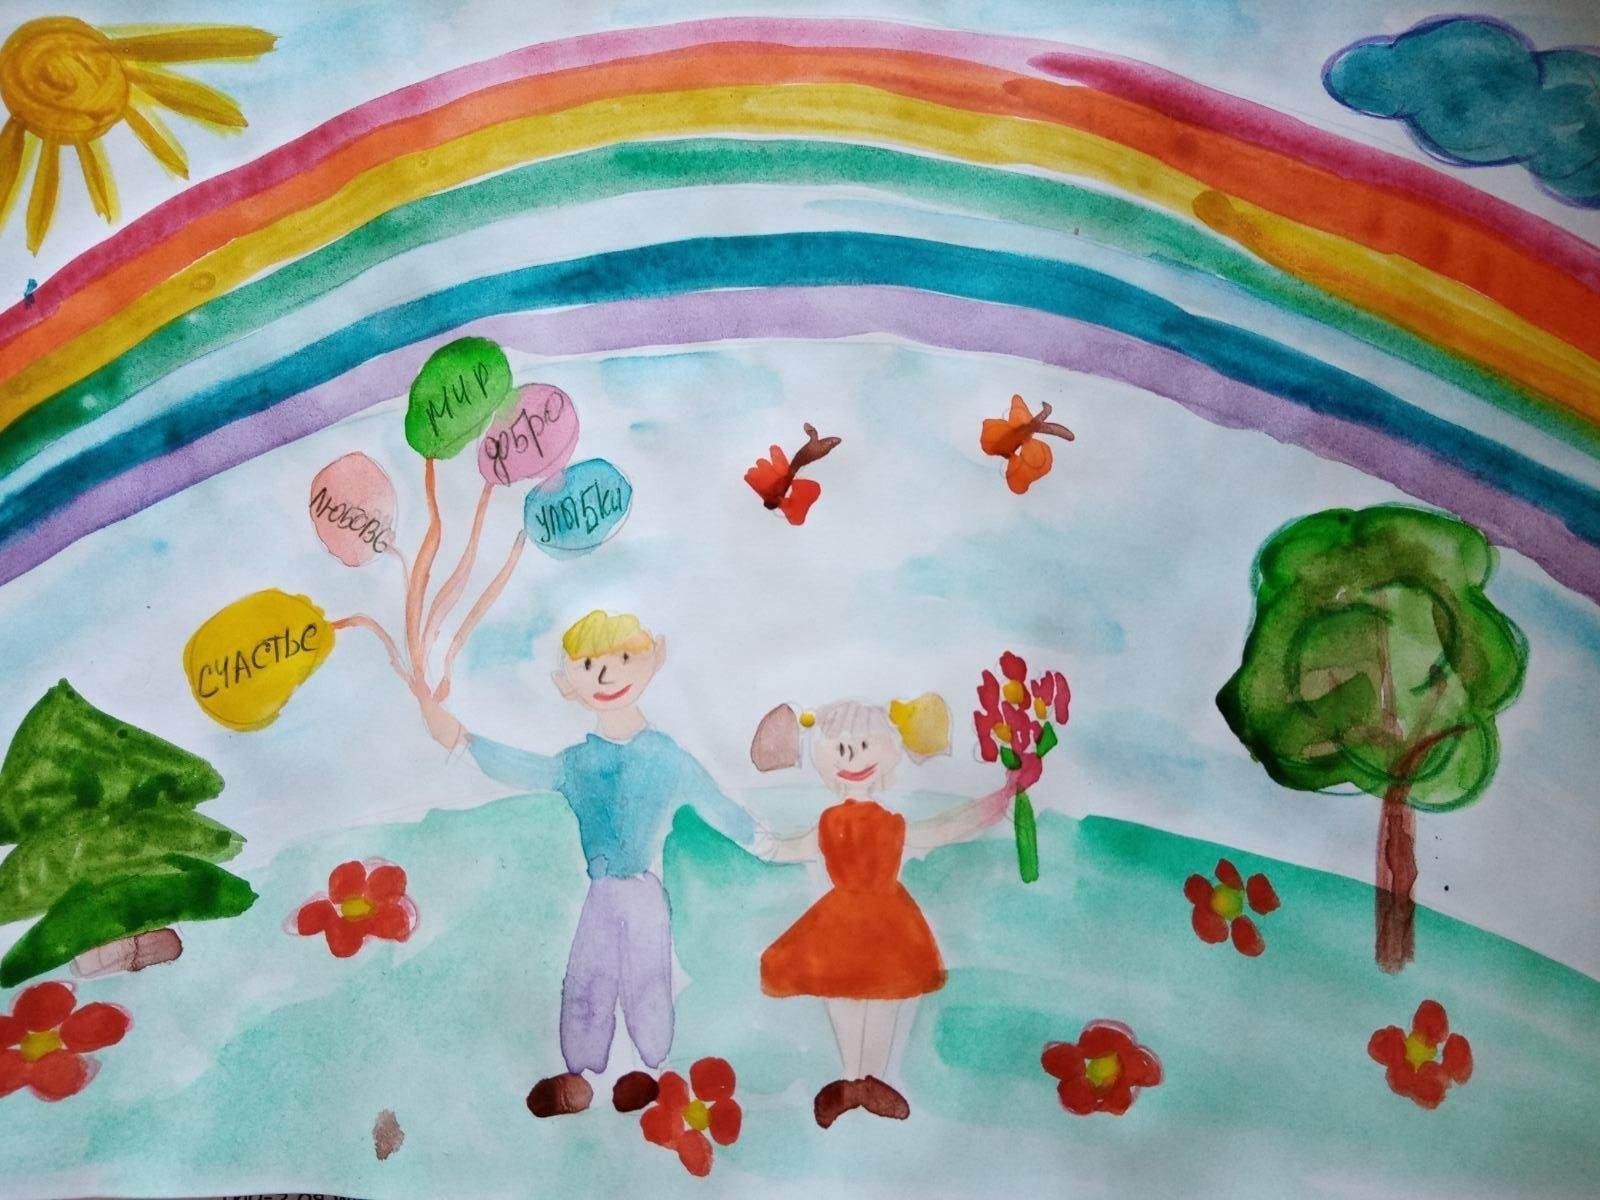 1 июня день защиты детей выставка рисунков